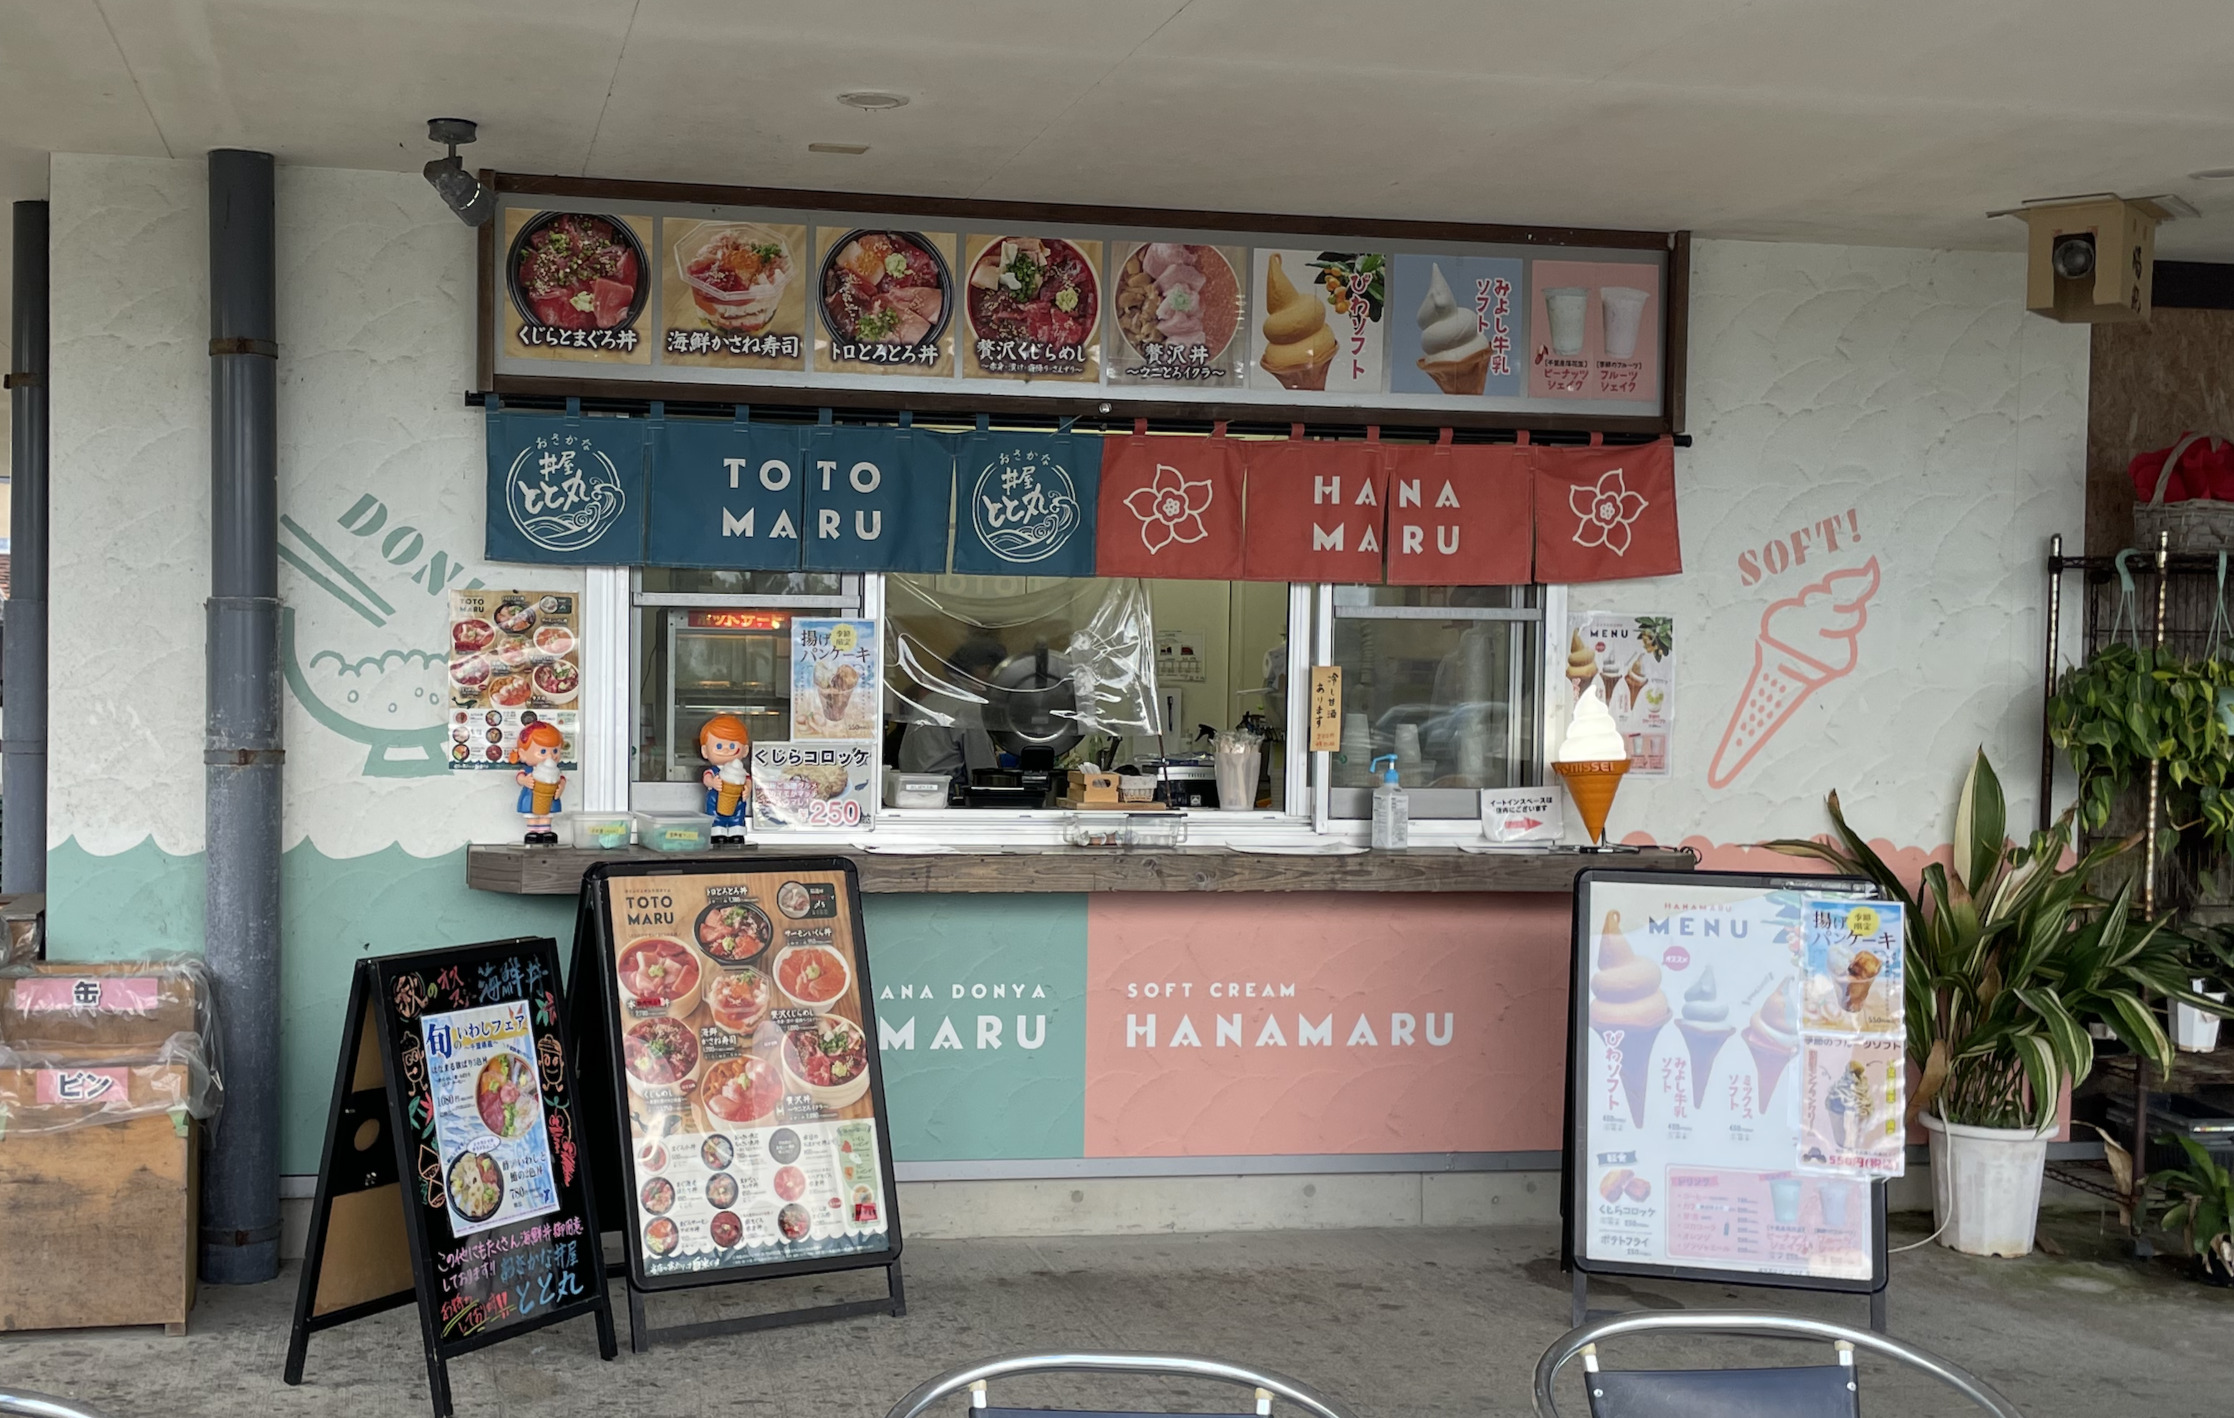 道の駅ローズマリー公園では海鮮丼やソフトクリームが売られています。